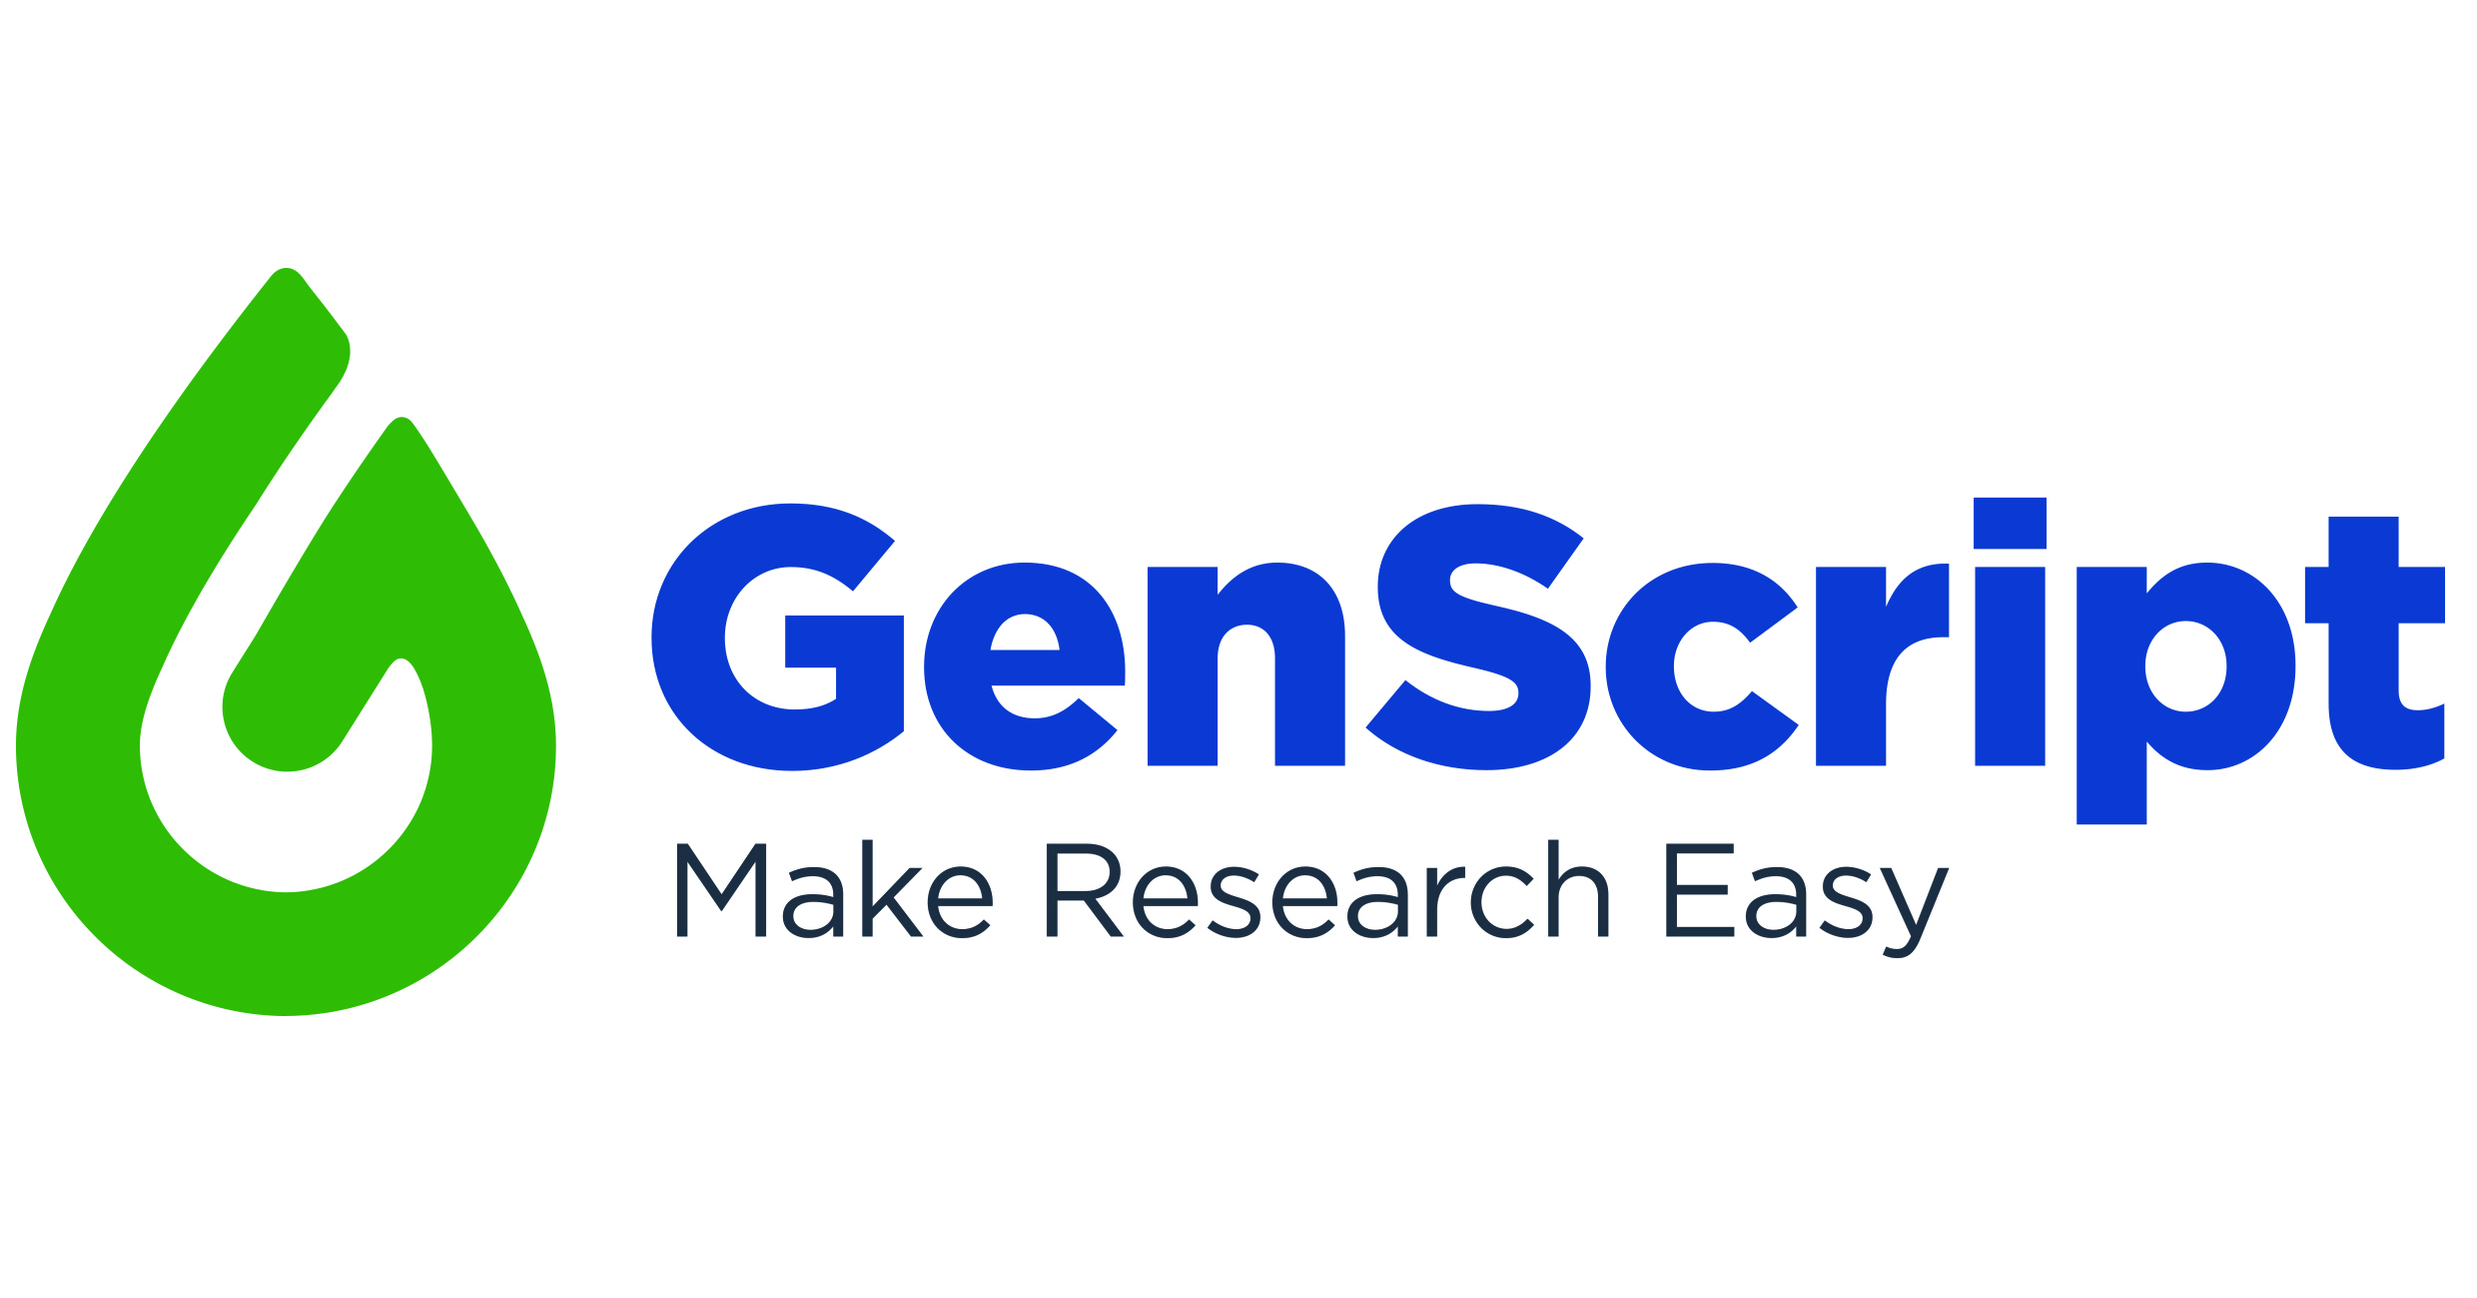 GenScript Partners with Harvard University to Develop